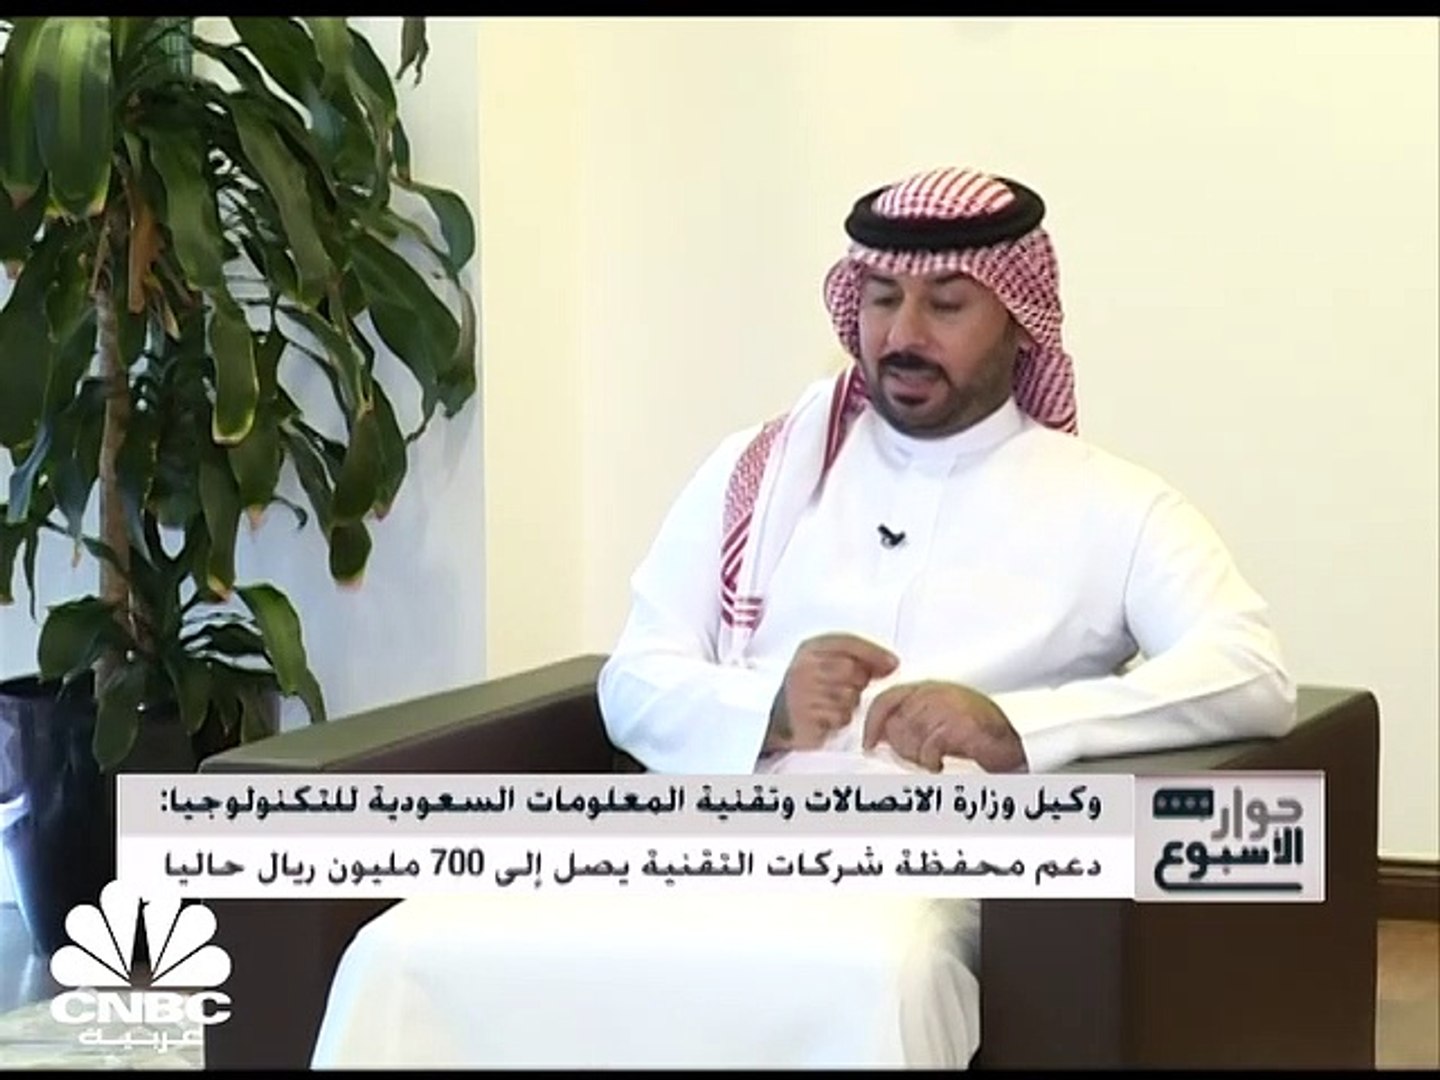 وكيل وزارة الاتصالات وتقنية المعلومات السعودية للتكنولوجيا لـCNBC عربية:  الوصول إلى التمويل أهم تحد تواجهه شركات تقنية المعلومات - video Dailymotion